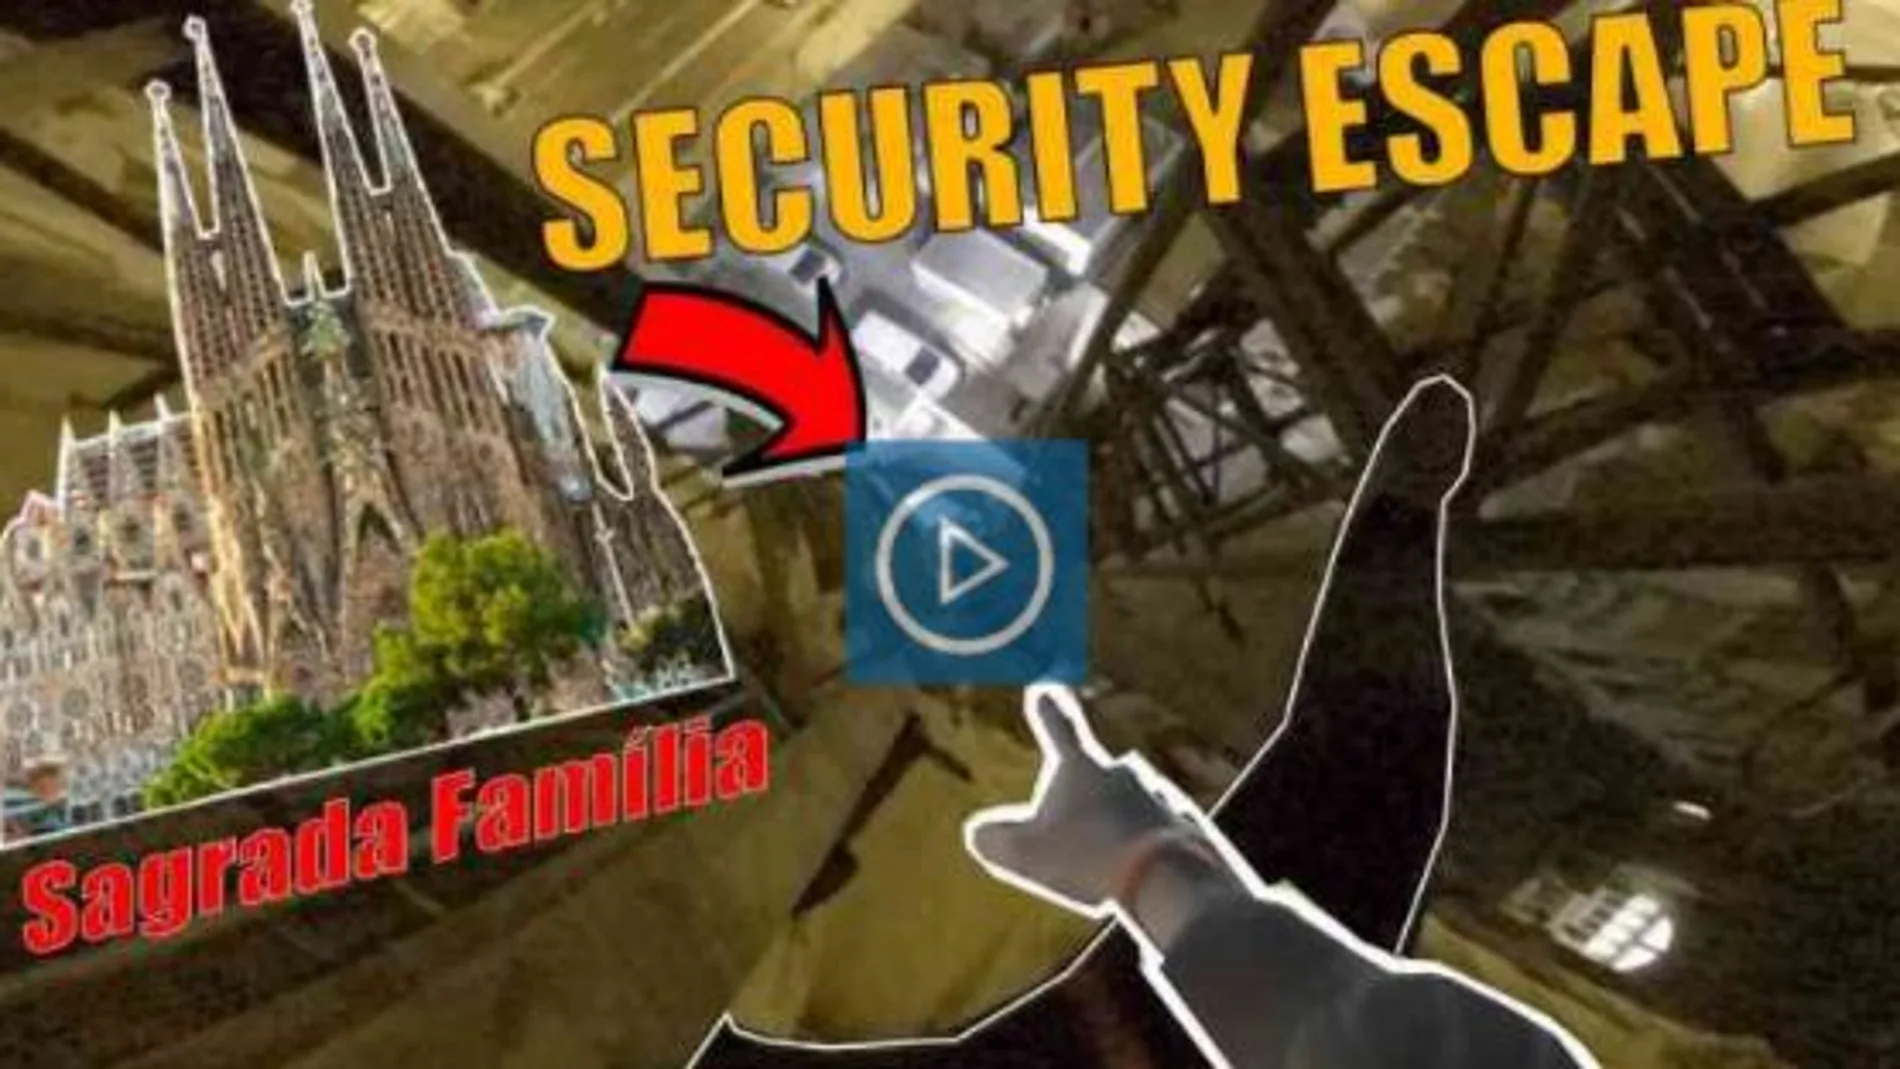 Investigan a los «youtubers» que escalaron la Sagrada Familia burlando la seguridad